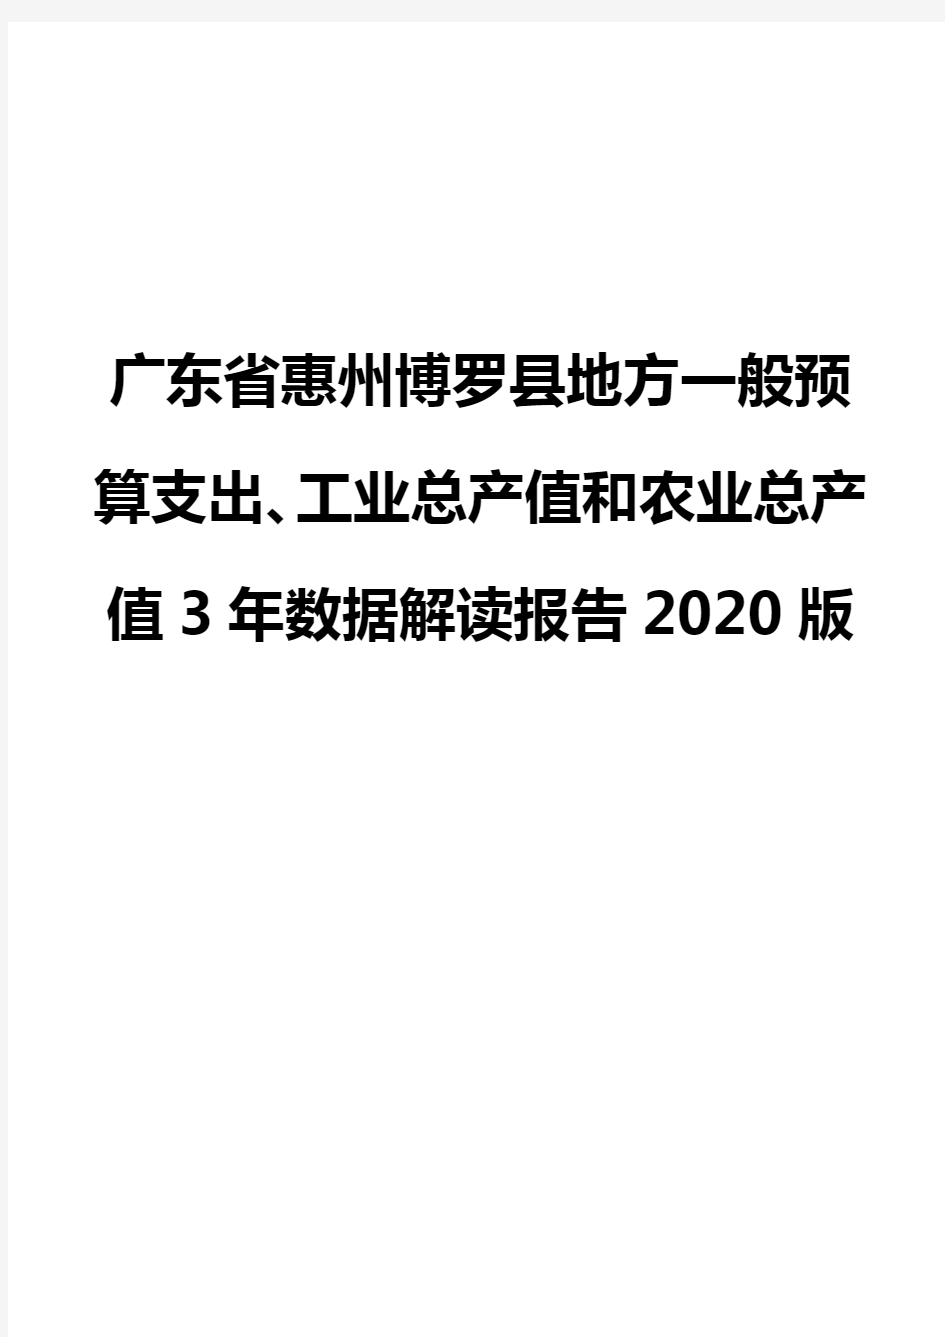 广东省惠州博罗县地方一般预算支出、工业总产值和农业总产值3年数据解读报告2020版